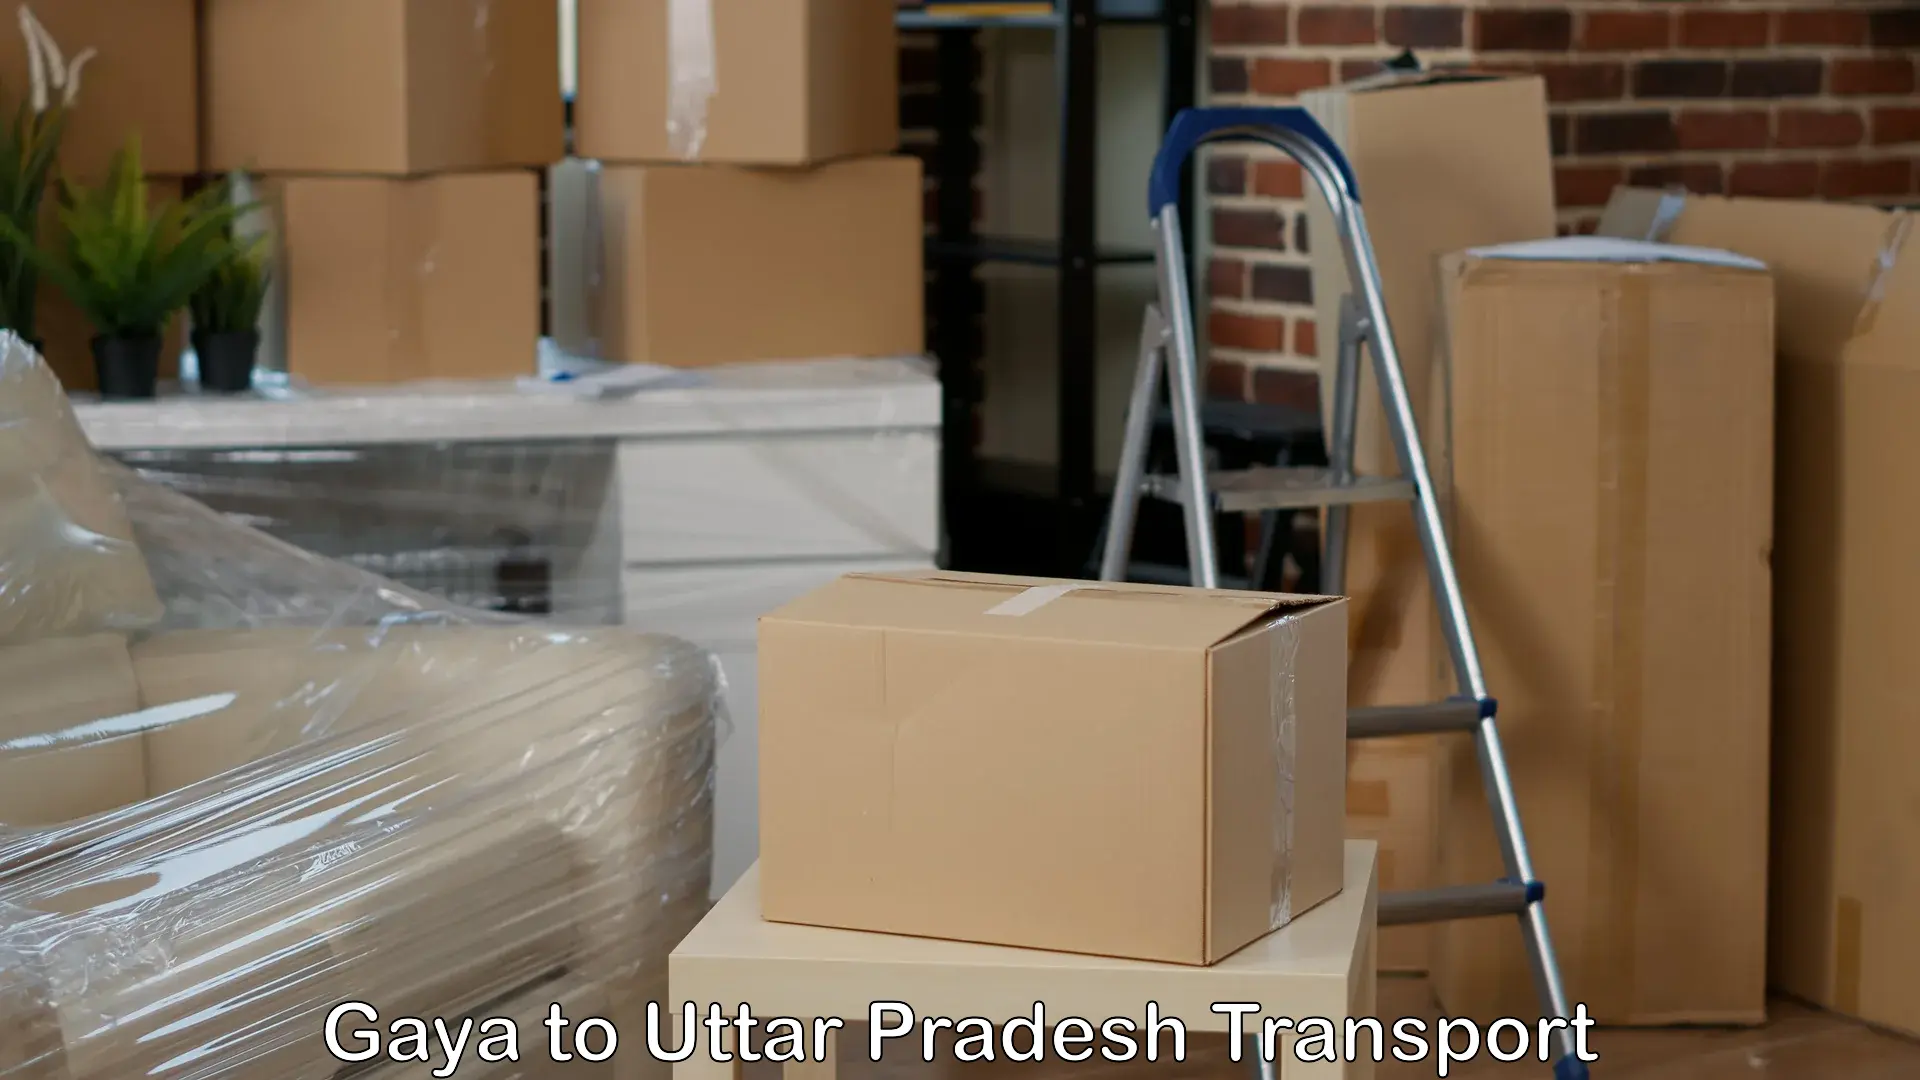 Shipping services Gaya to Baksha